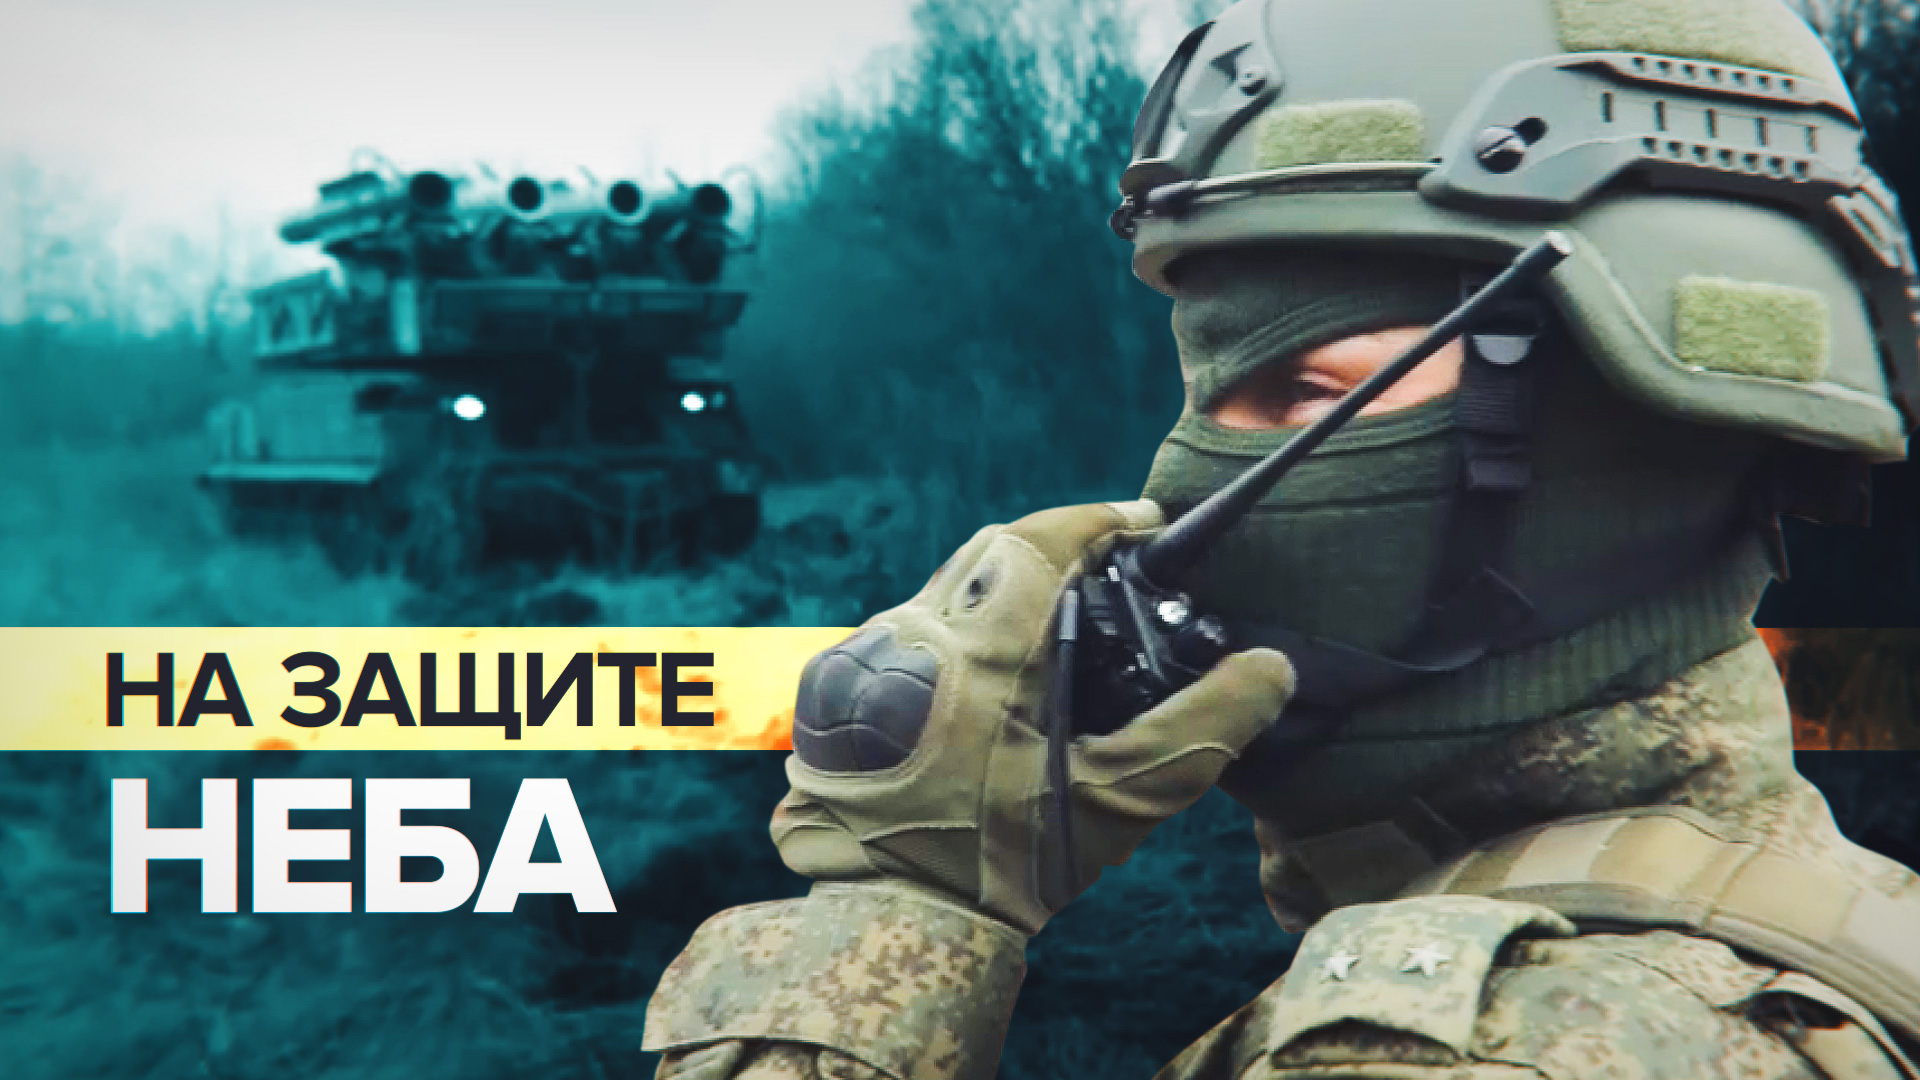 «Сбито более 500 целей»: как работает зенитная ракетная бригада в ДНР